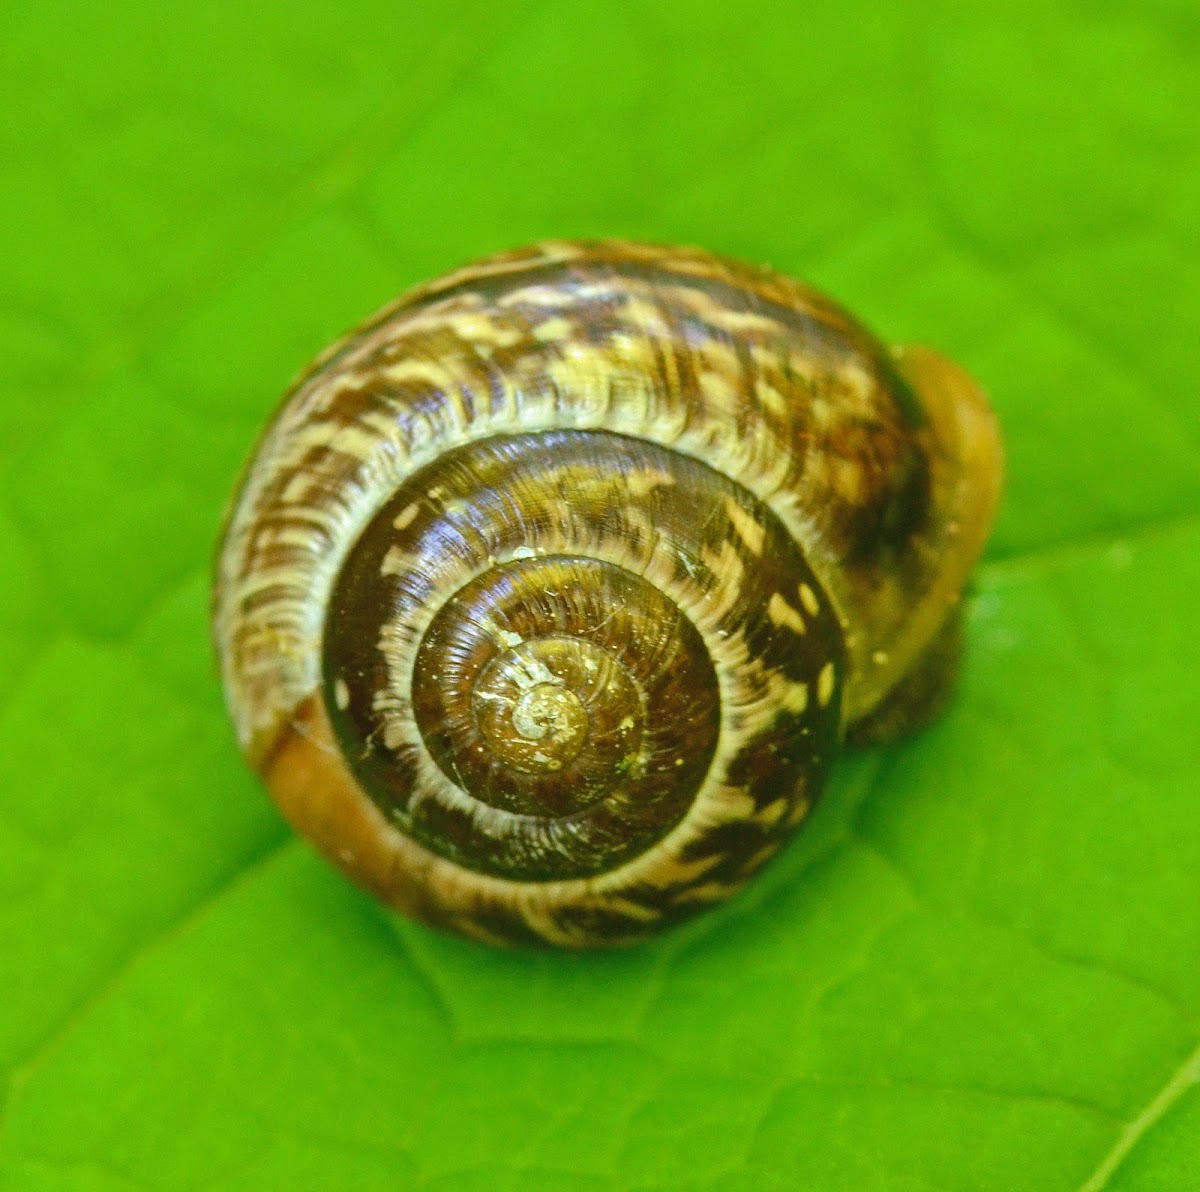 Unidentified snail